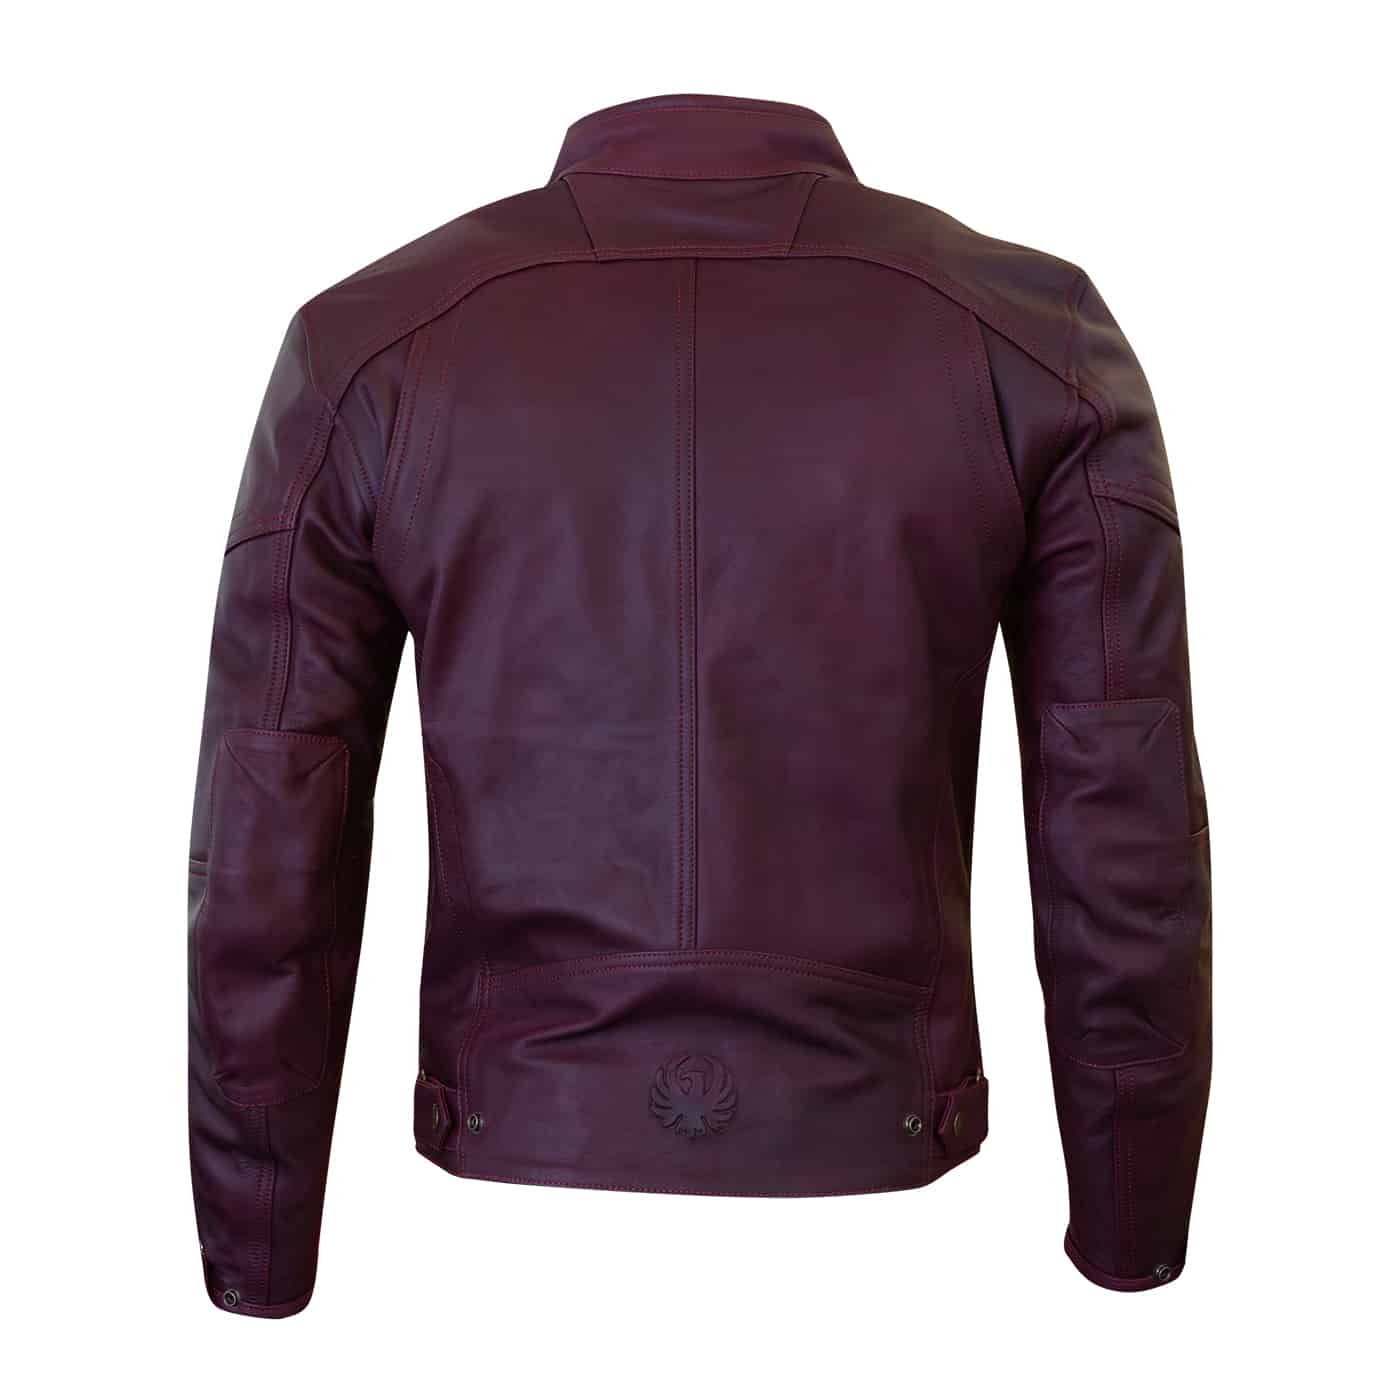 Merlin Bike Gear - Merlin Gable waterproof leather motorcycle jacket